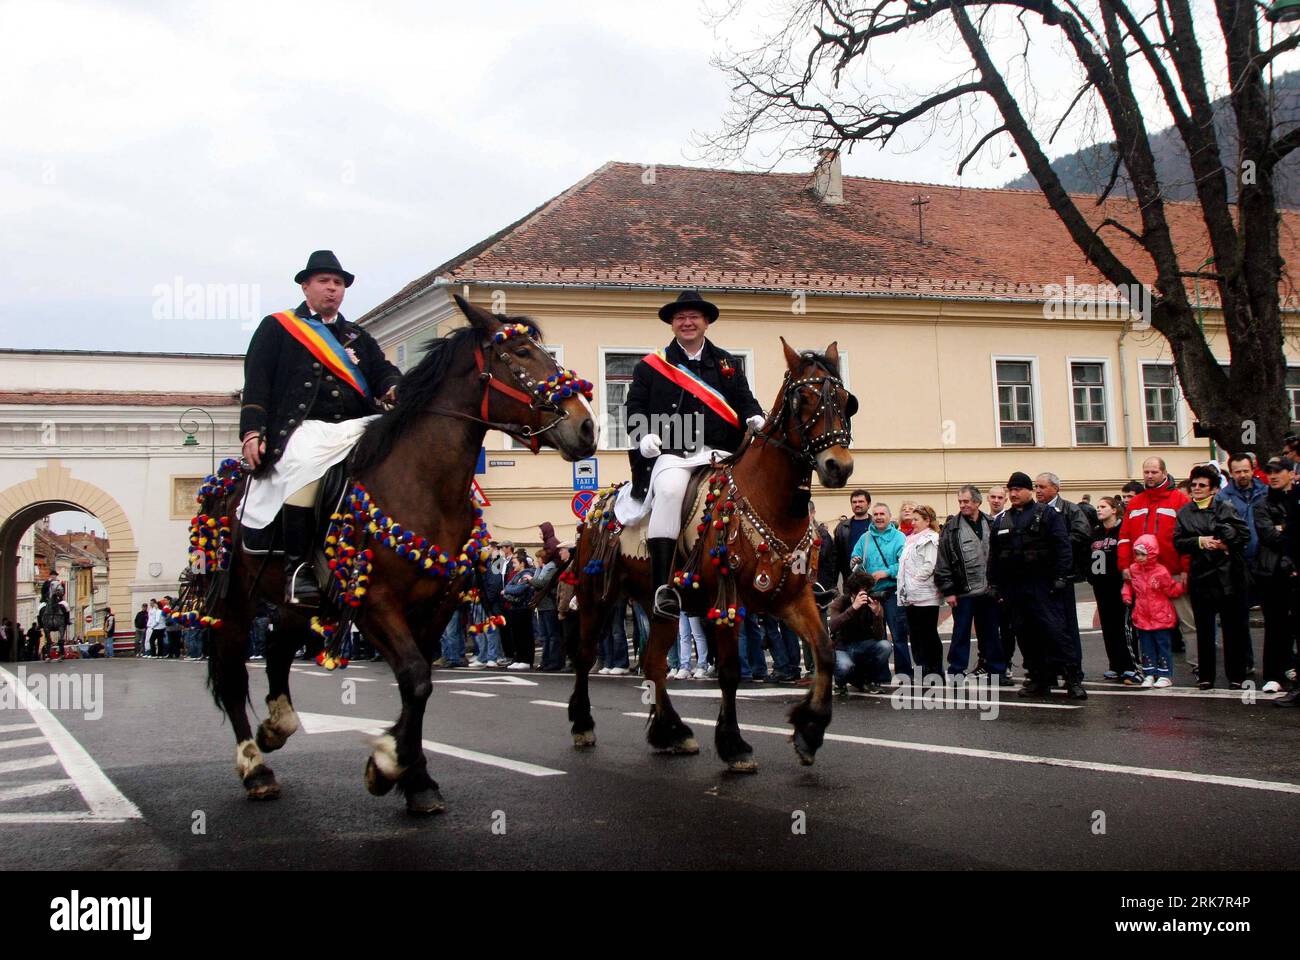 Bildnummer: 53933236 Datum: 11.04.2010 Copyright: imago/Xinhua Cavalry Parade findet während des Festes der Jugend von Brasov statt, das in Brasov, etwa 166 km nördlich von Rumäniens Hauptstadt Bukarest, am 11. April 2010 gefeiert wird. Junge Männer, bestehend aus sieben Gruppen von Kavallerie mit eigenem Kostüm und Flagge, ritten von den Bergen und reisten um Brasov, um den Frühling zu feiern. (Xinhua/Gabriel Petrescu)(zl) (3)RUMÄNIEN-BRASOV-DAS fest der Jugend PUBLICATIONxNOTxINxCHN Gesellschaft fest der Jugend traditionelles fest kbdig xub 2010 quer Premiumd xint Bildnummer 53933236 Datum 11 04 2010 Co Stockfoto